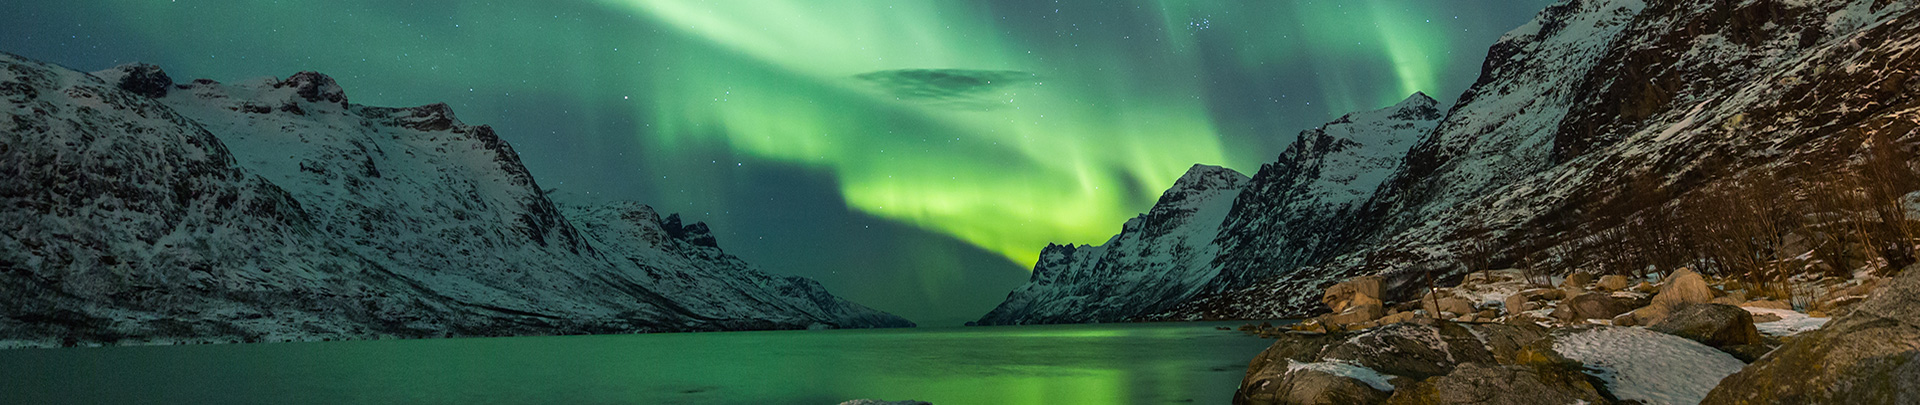 Peregrine-Adventures-iceland_northern-lights-aurora